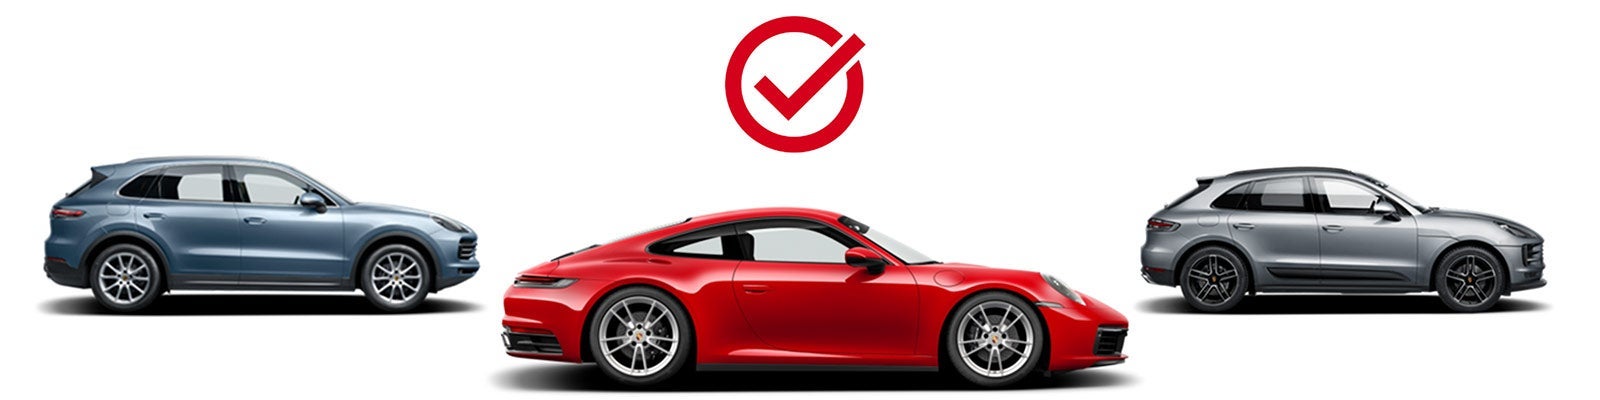 Choose Your Porsche | Porsche Clearwater in Clearwater FL